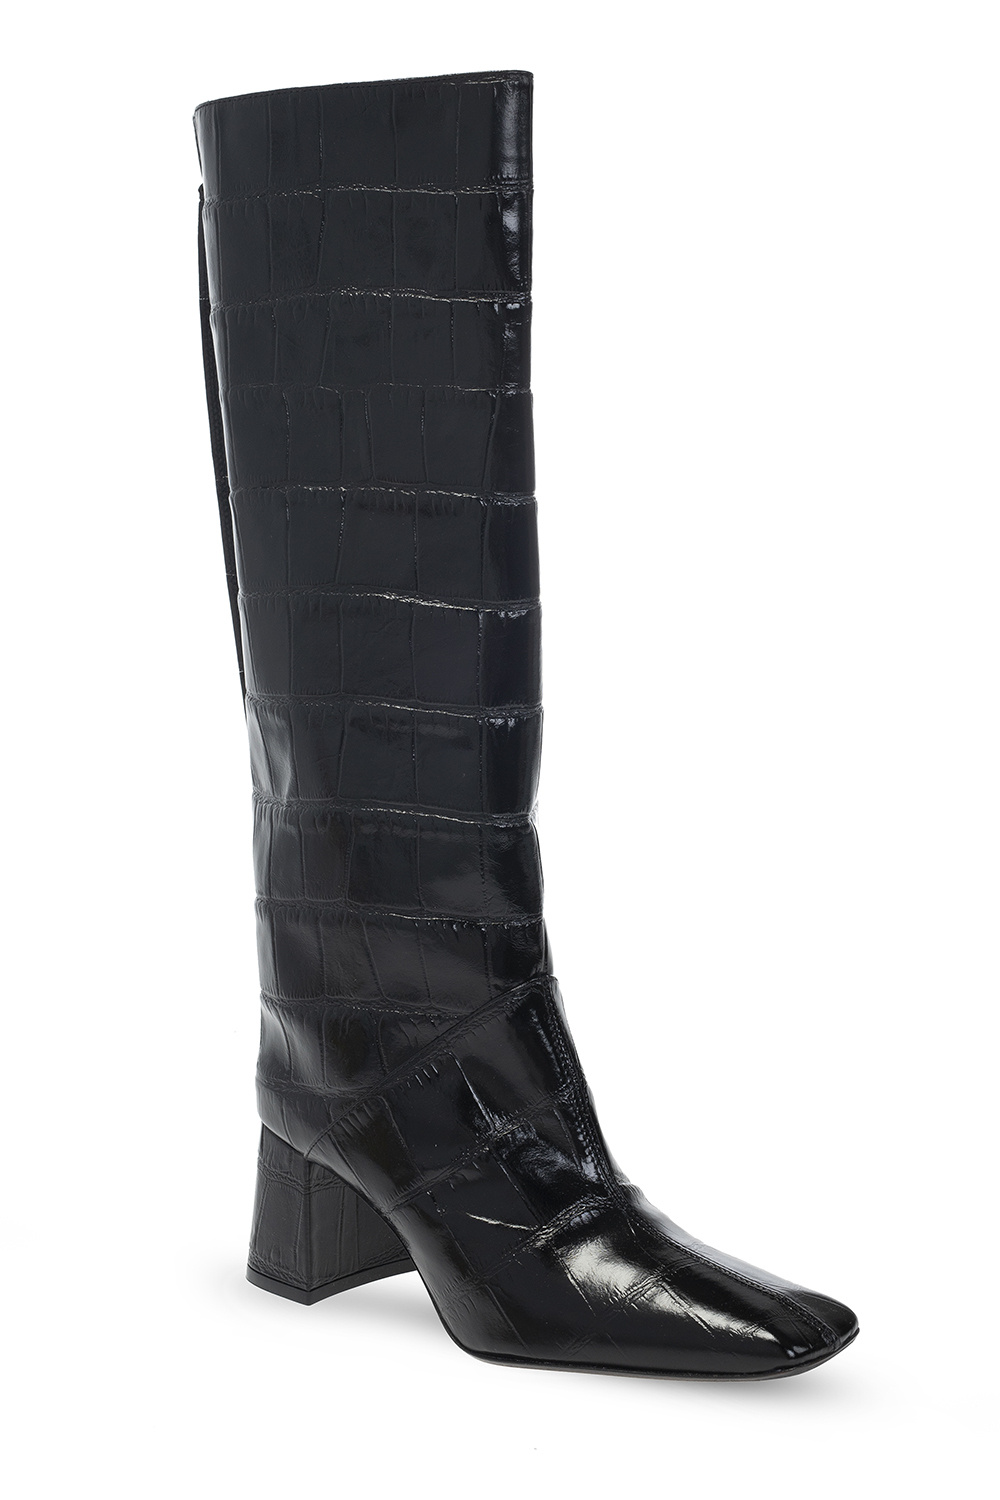 Miista ‘Finola’ heeled boots